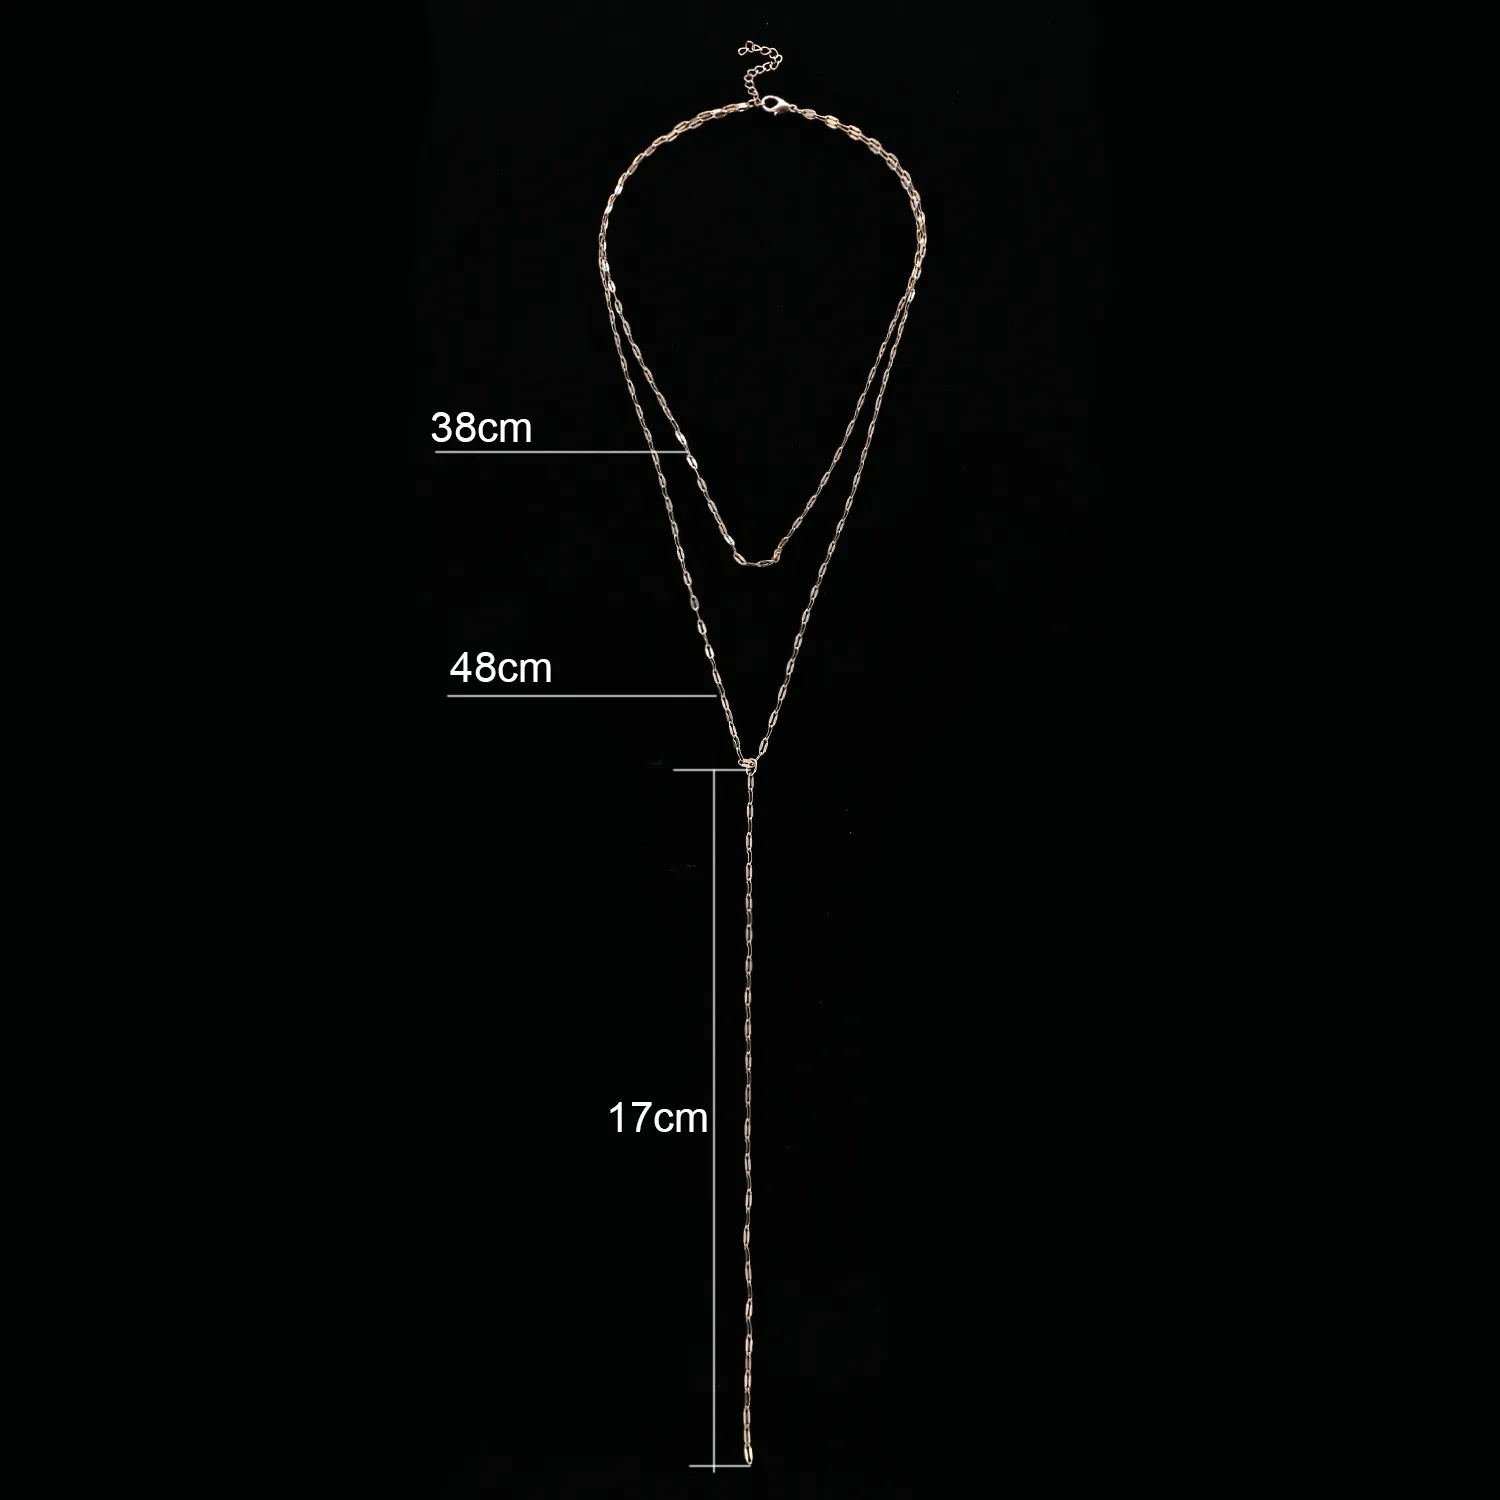 Großhandel Lange Quaste Choker Halskette Elegante Mode Doppel Schicht Collier Femme Choker Kragen Kette Halskette für Frauen Schmuck